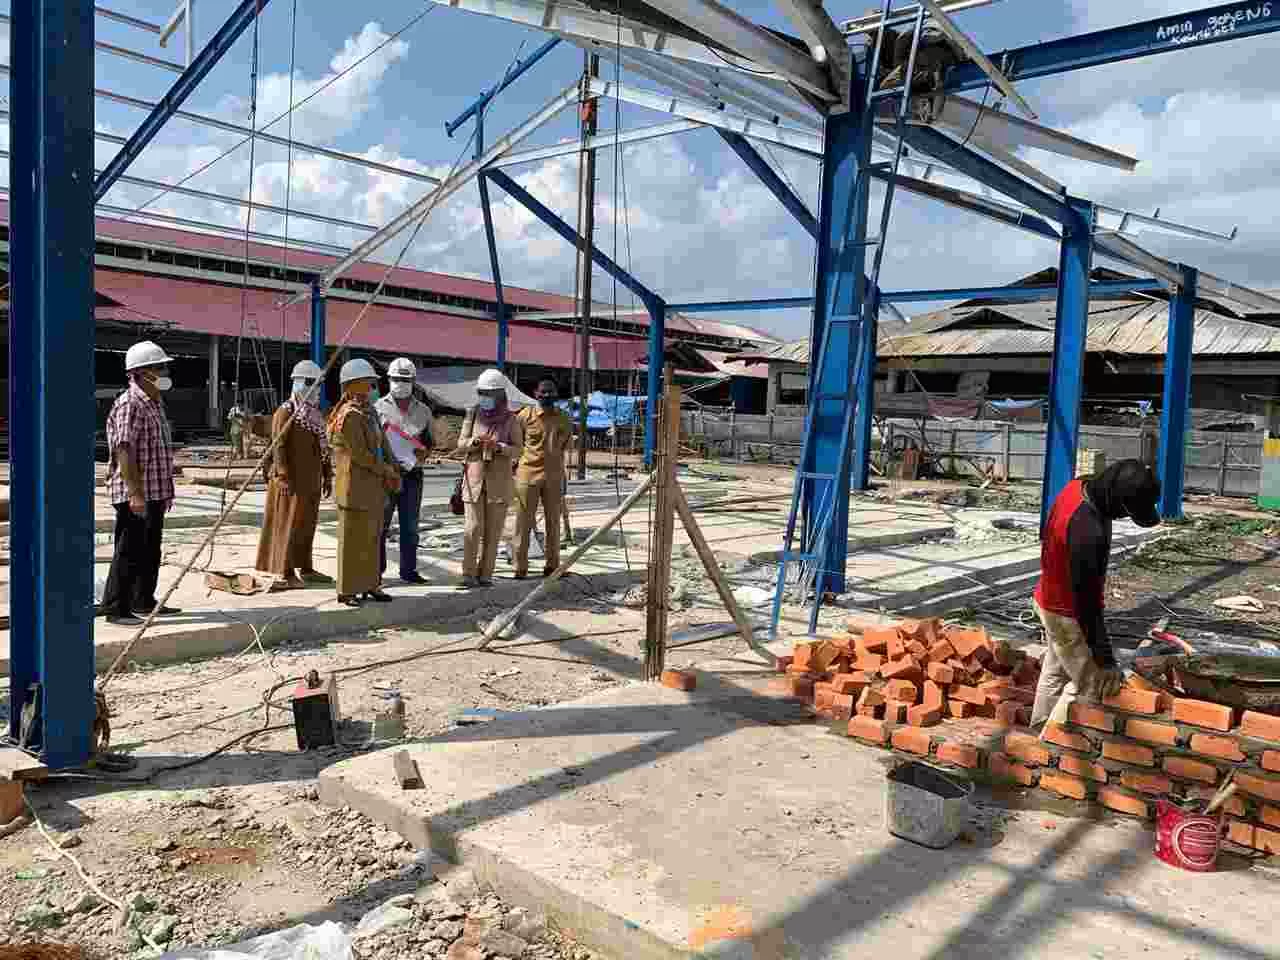 TAHUN DEPAN: Pembukaan toko Pasar Senaken yang kini tengah dibangun pasca terbakar, baru bisa dioperasikan pertengahan 2021.